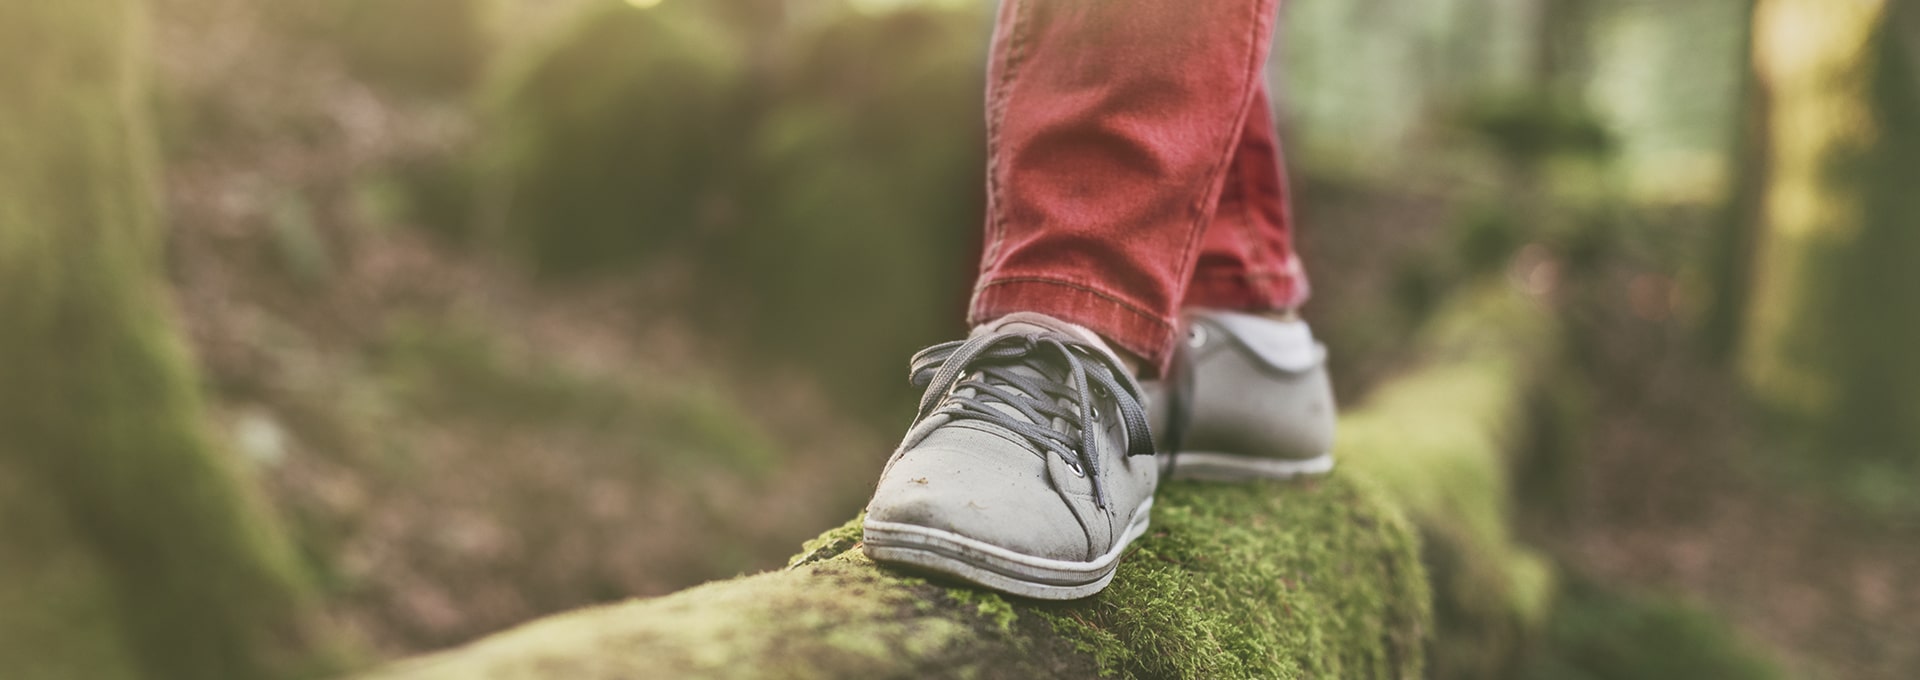 Voeten met grijze schoenen balancerend op een houten stam in het bos